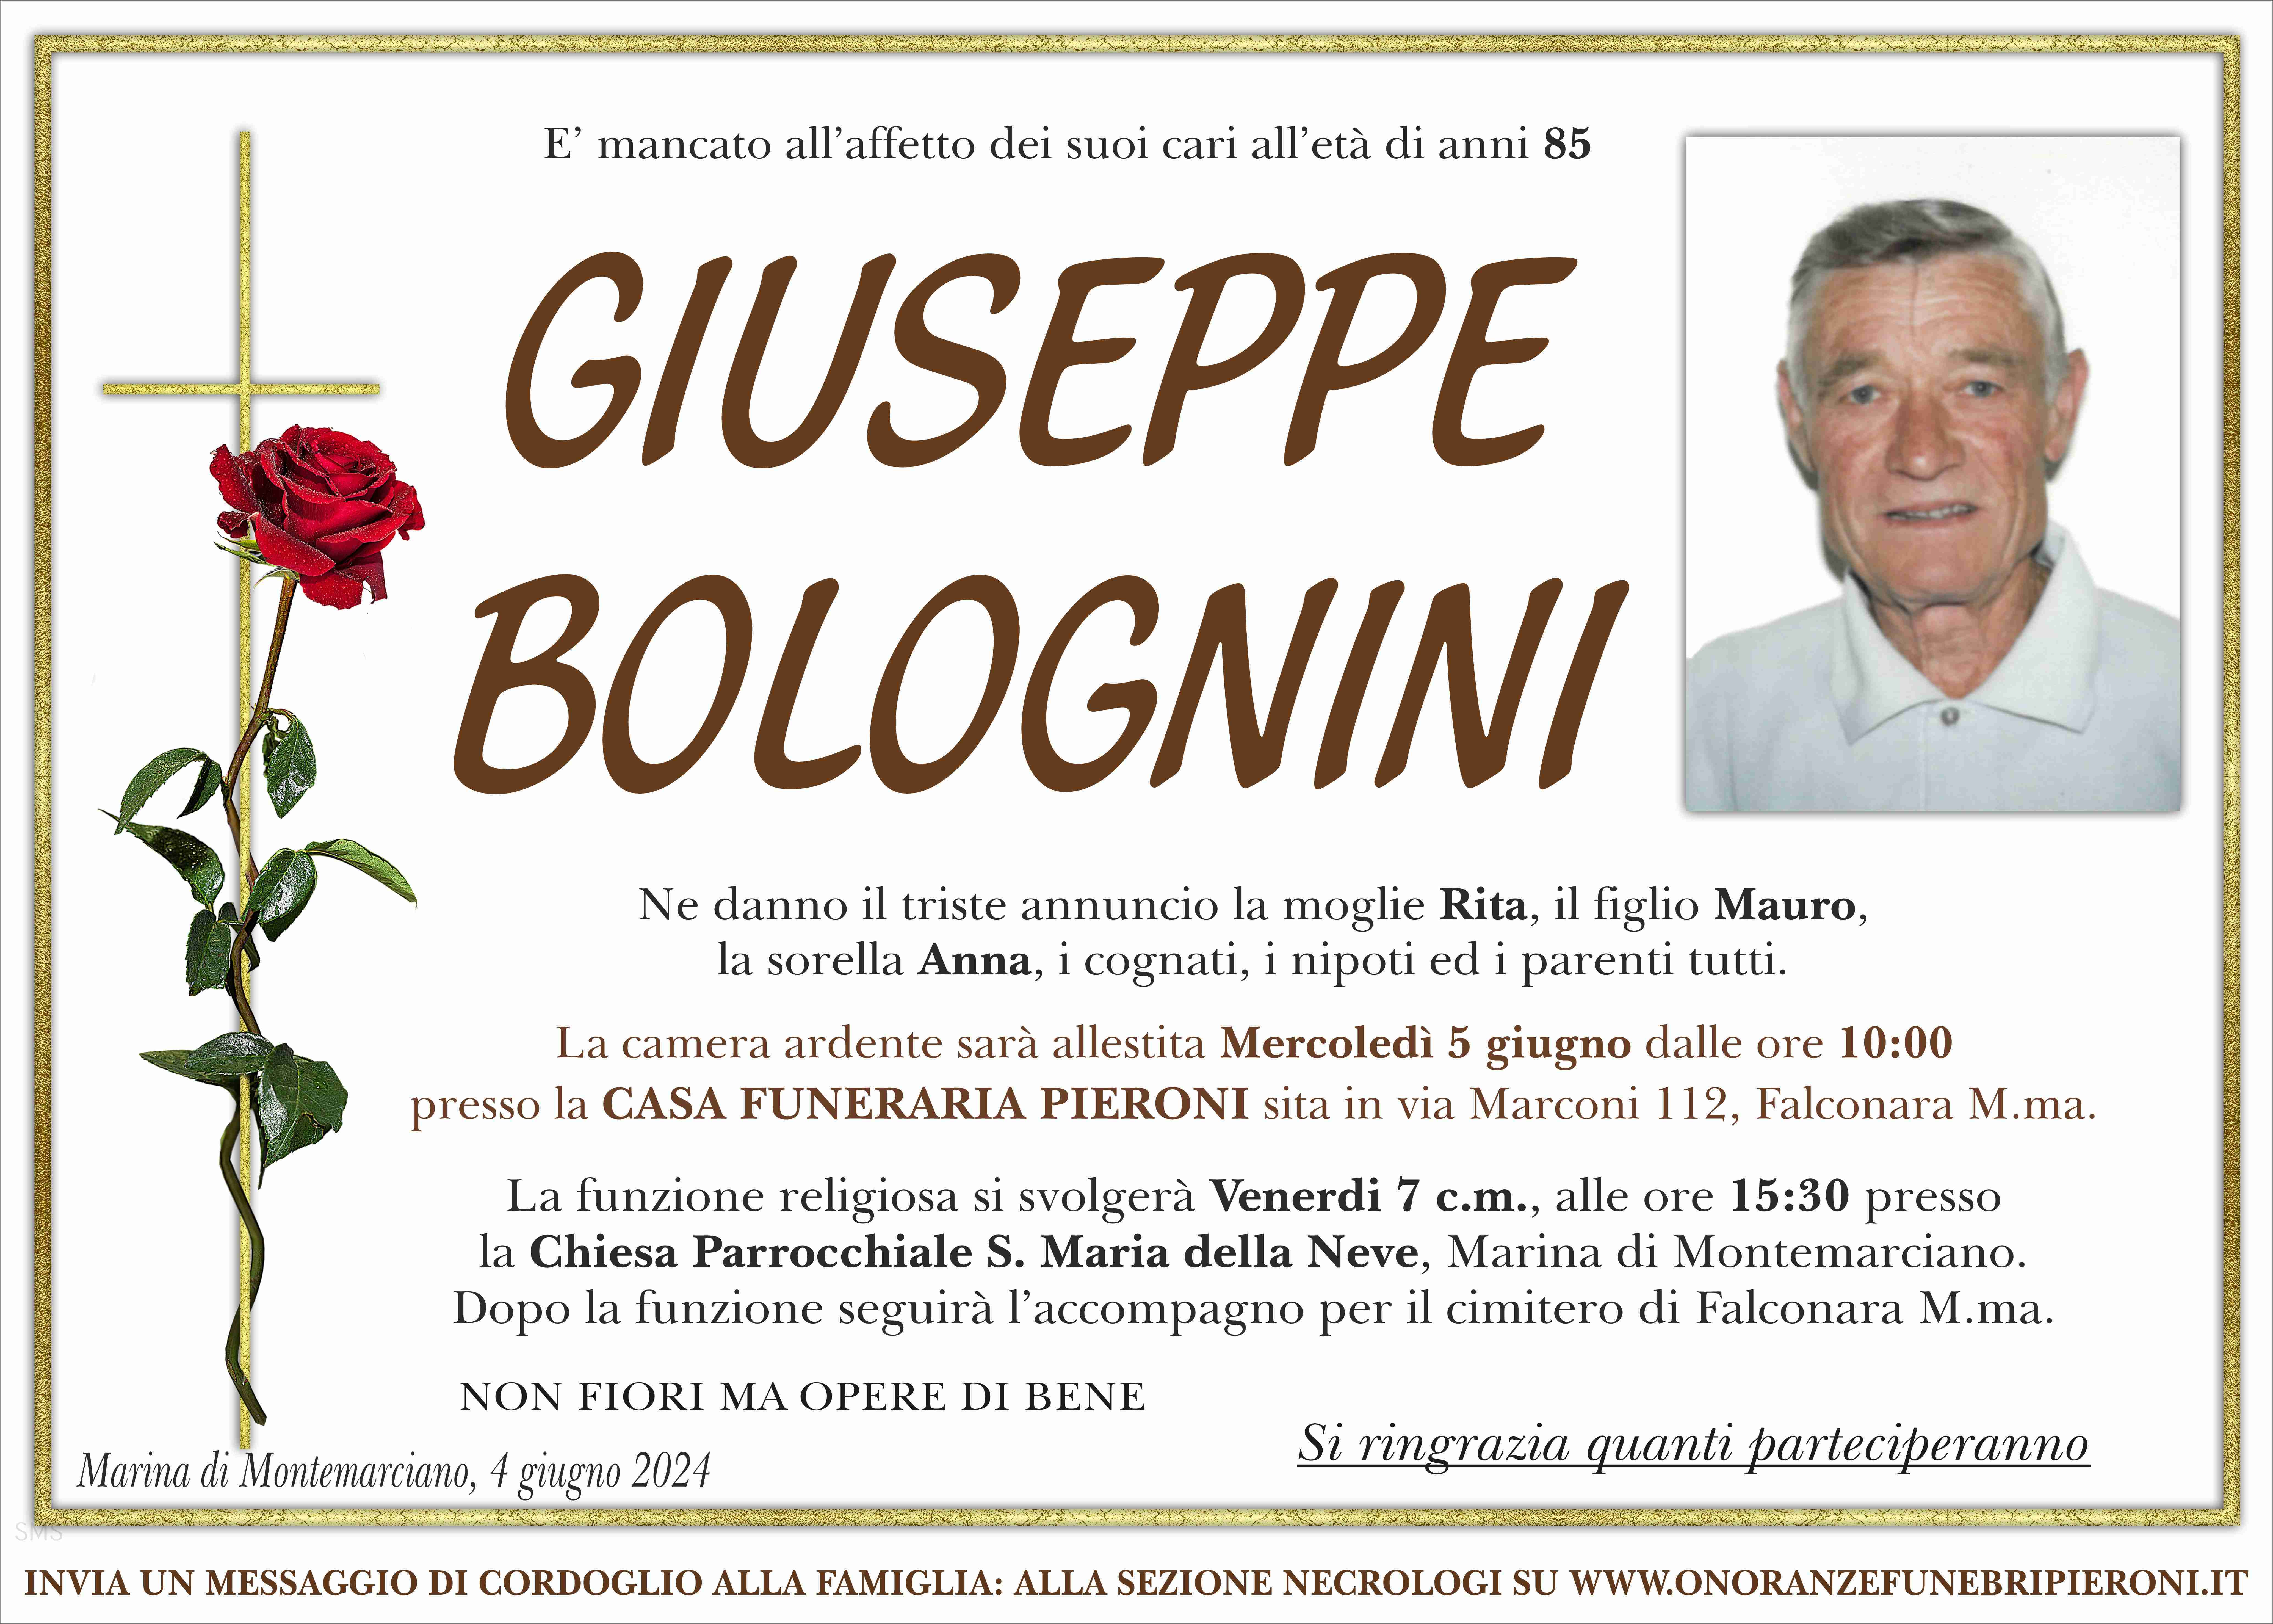 Giuseppe Bolognini